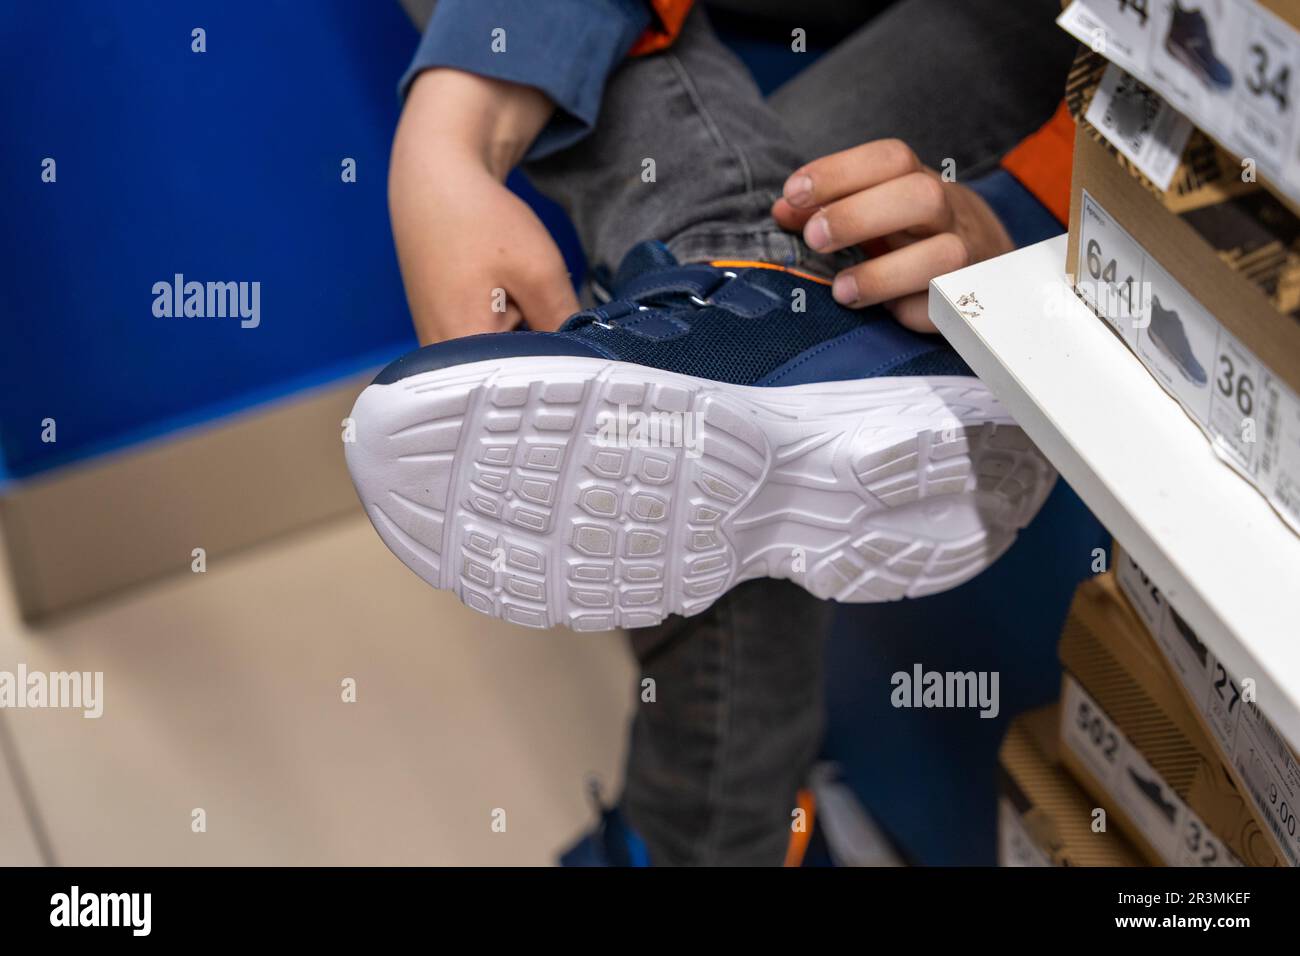 Neue modische Sneaker in einem Schuhgeschäft. Neue Schuhe kaufen  Stockfotografie - Alamy